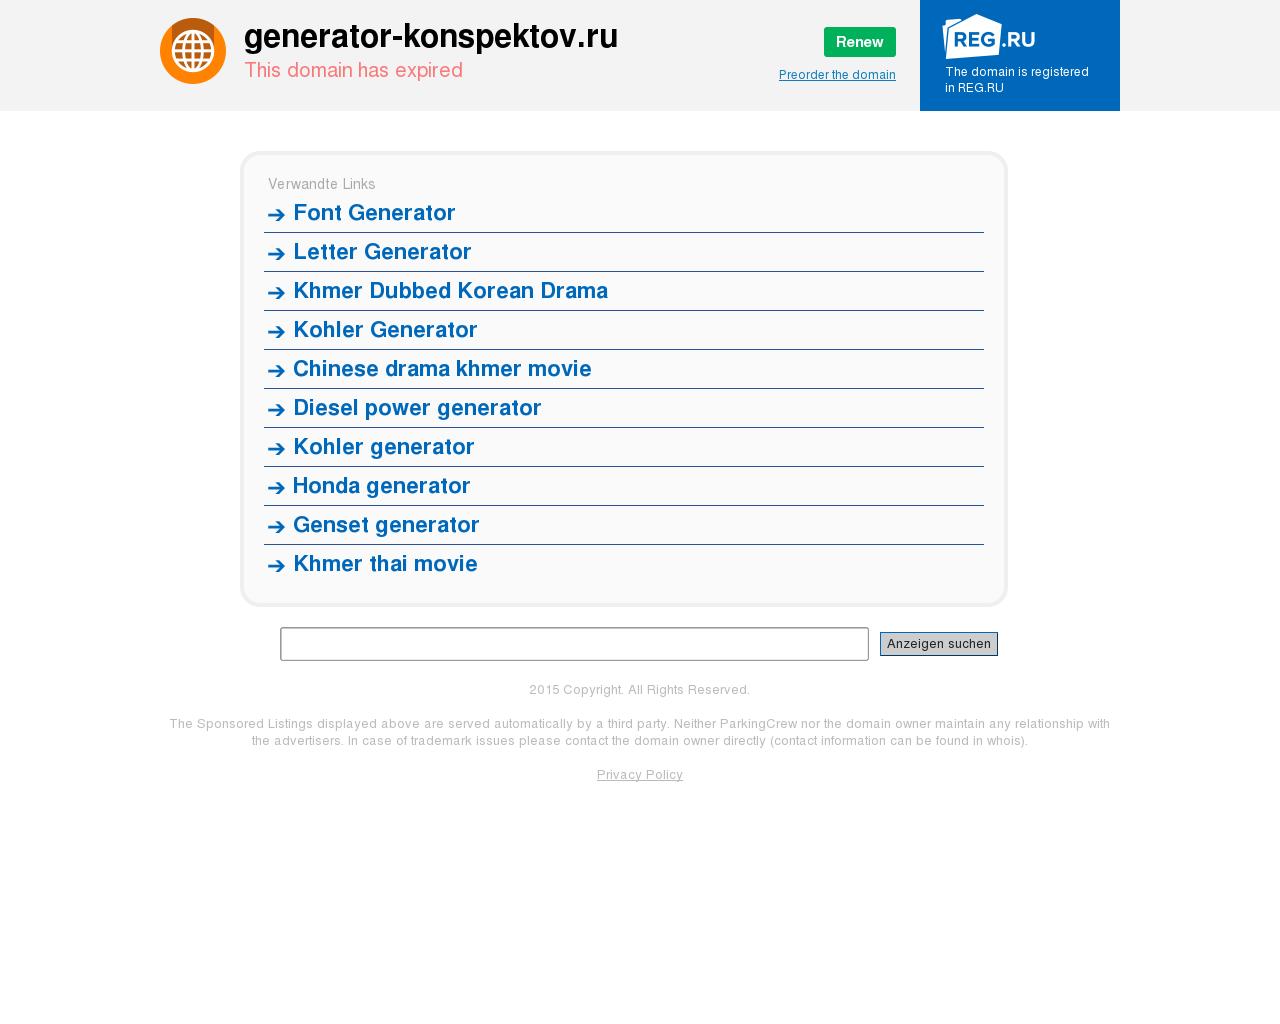 Изображение сайта generator-konspektov.ru в разрешении 1280x1024